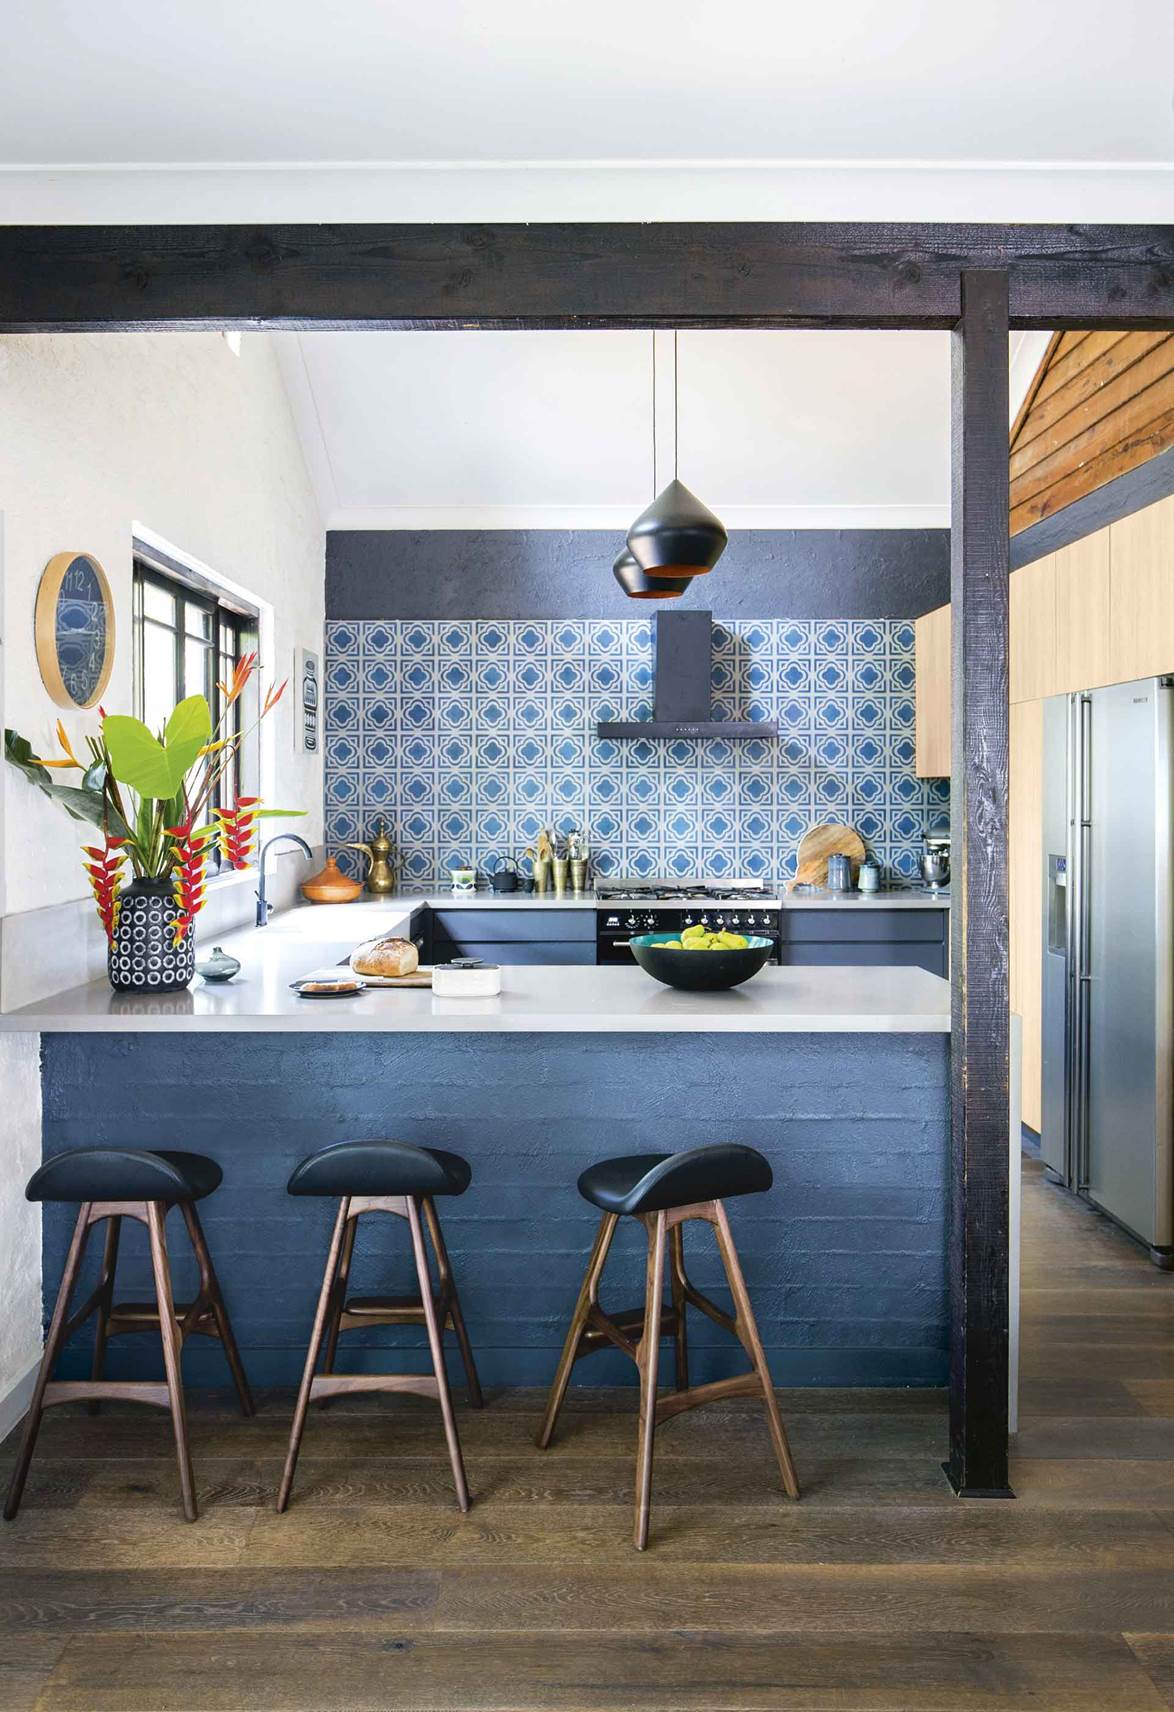 Với tông màu xanh đậm chủ đạo, đây chắc hẳn là căn phòng bếp trong mơ của mọi nhà